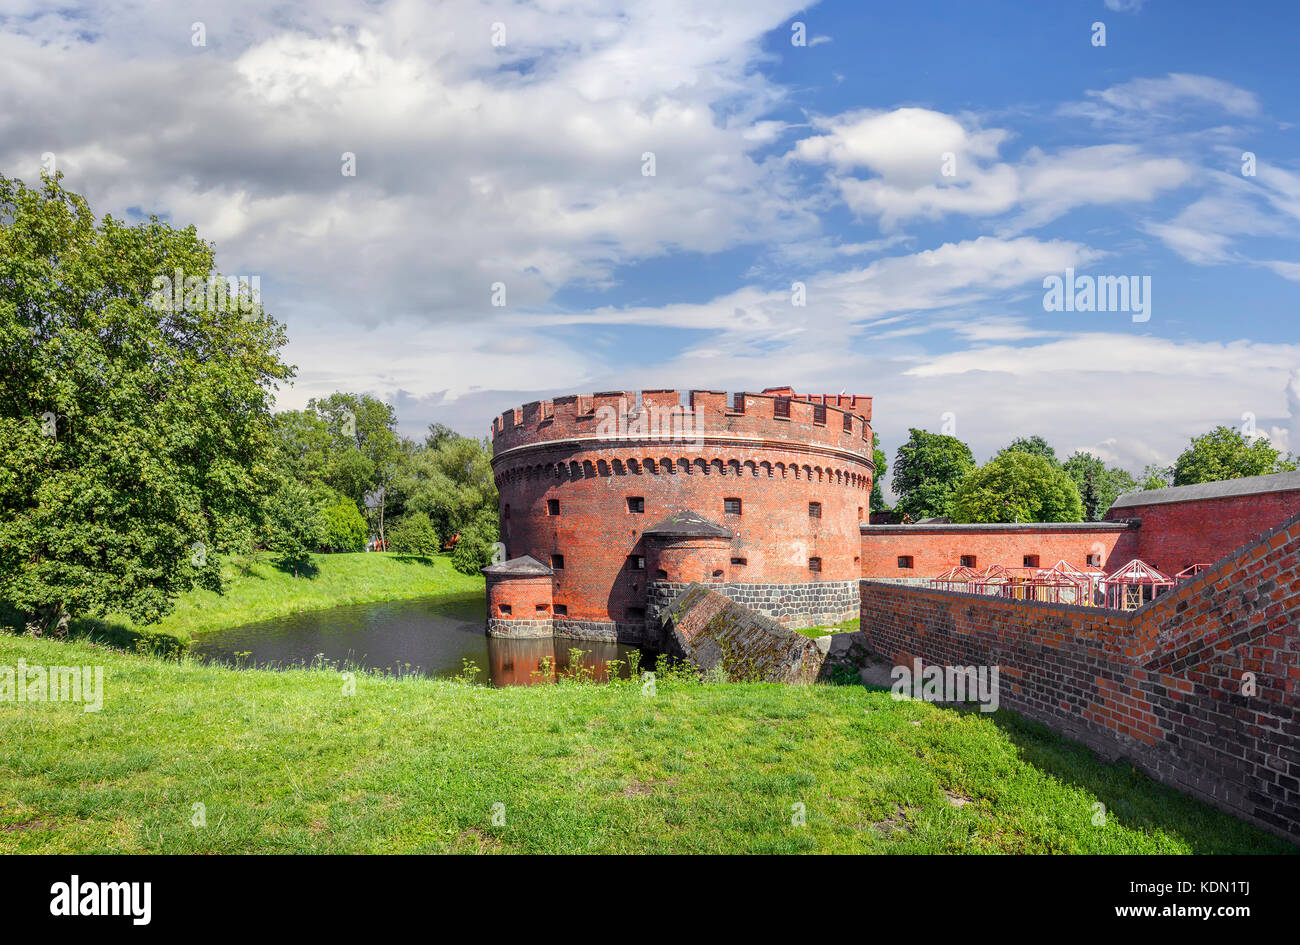 Festung Bastion Tower Der dohna Turm. Kaliningrad, Russland Stockfoto